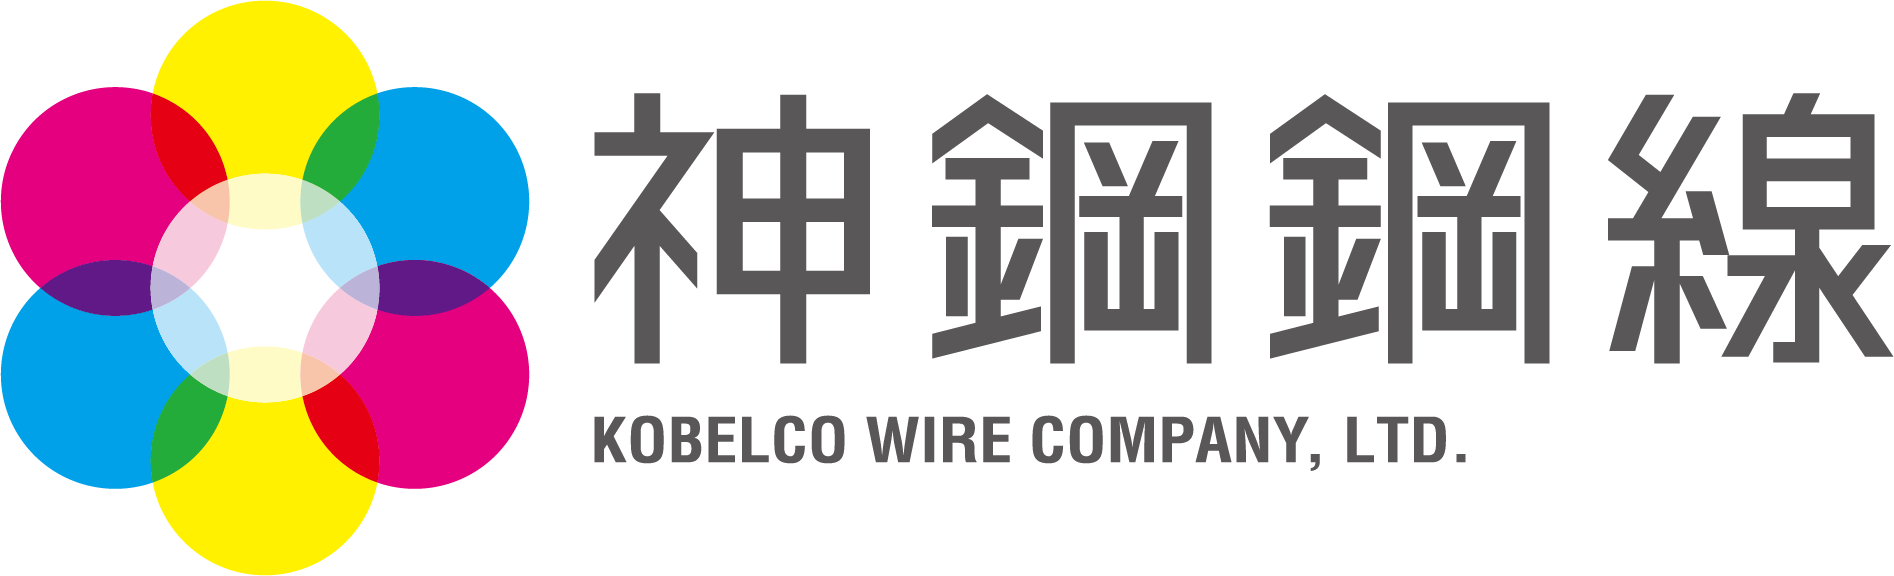 神鋼鋼線工業株式会社のロゴ